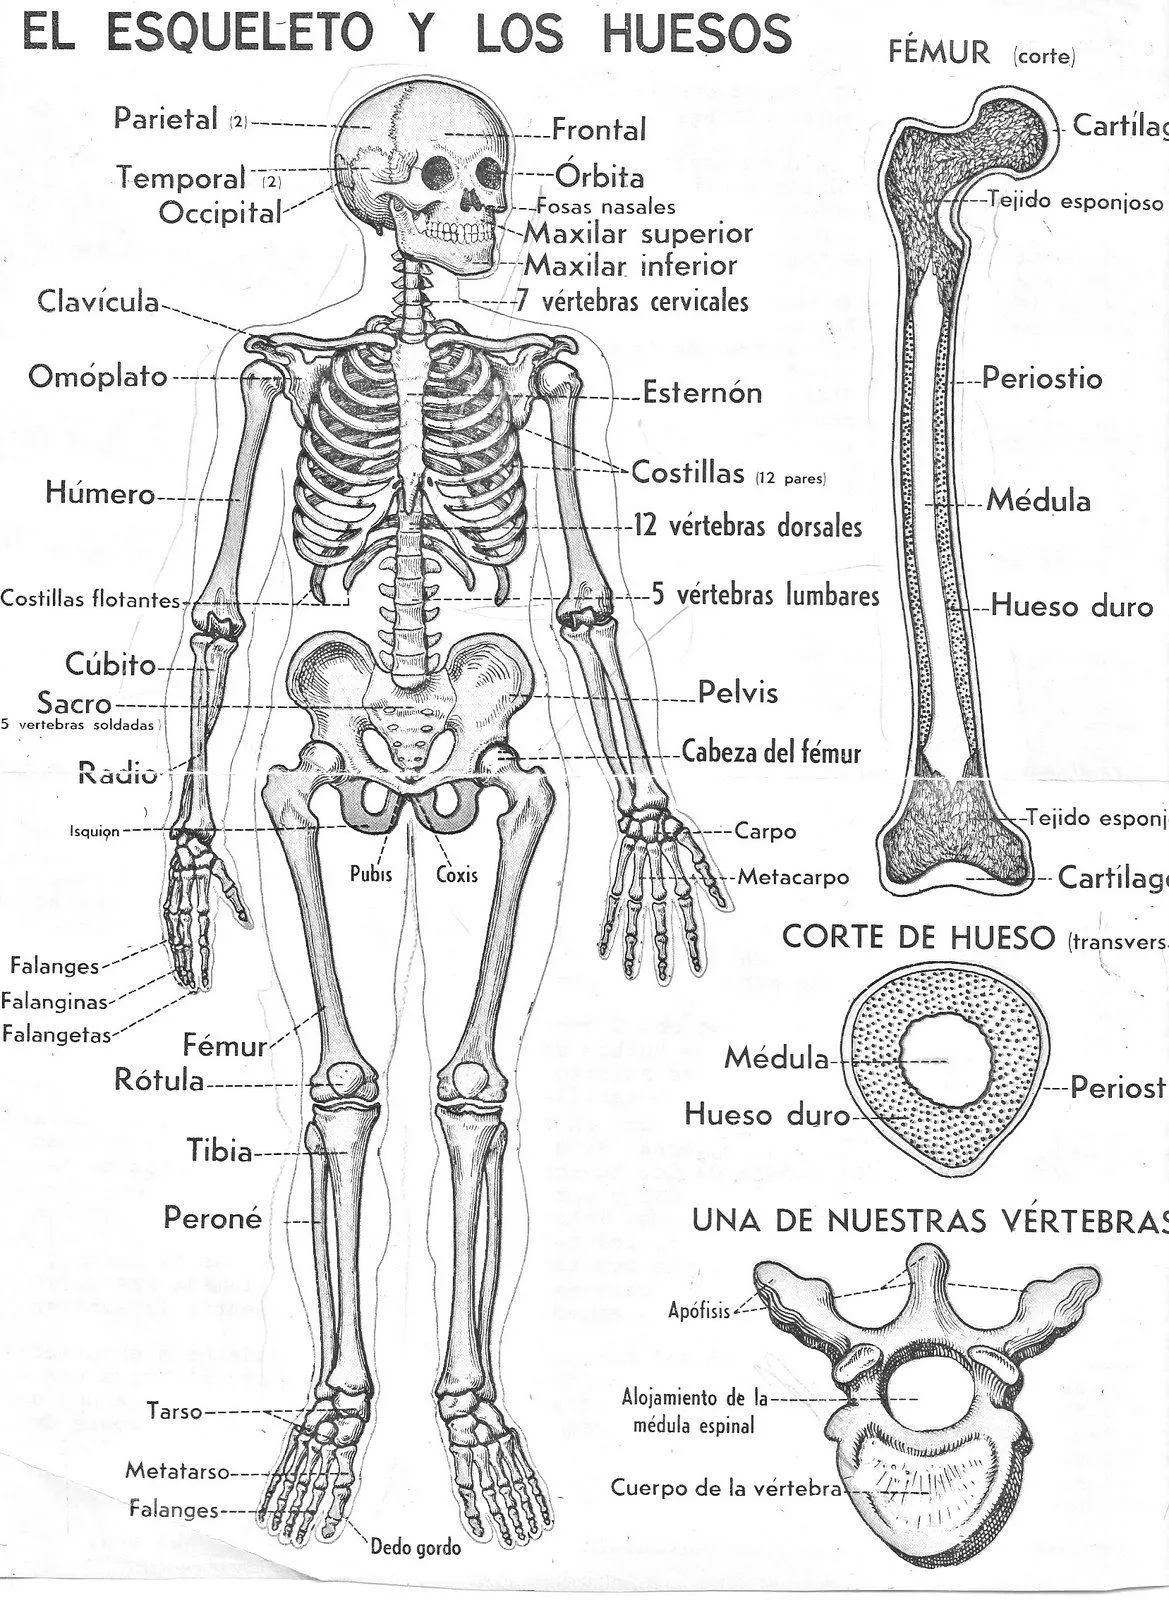 El esqueleto humano y sus partes para pintar | Anatomía del esqueleto humano,  Anatomía del esqueleto, Huesos del cuerpo humano